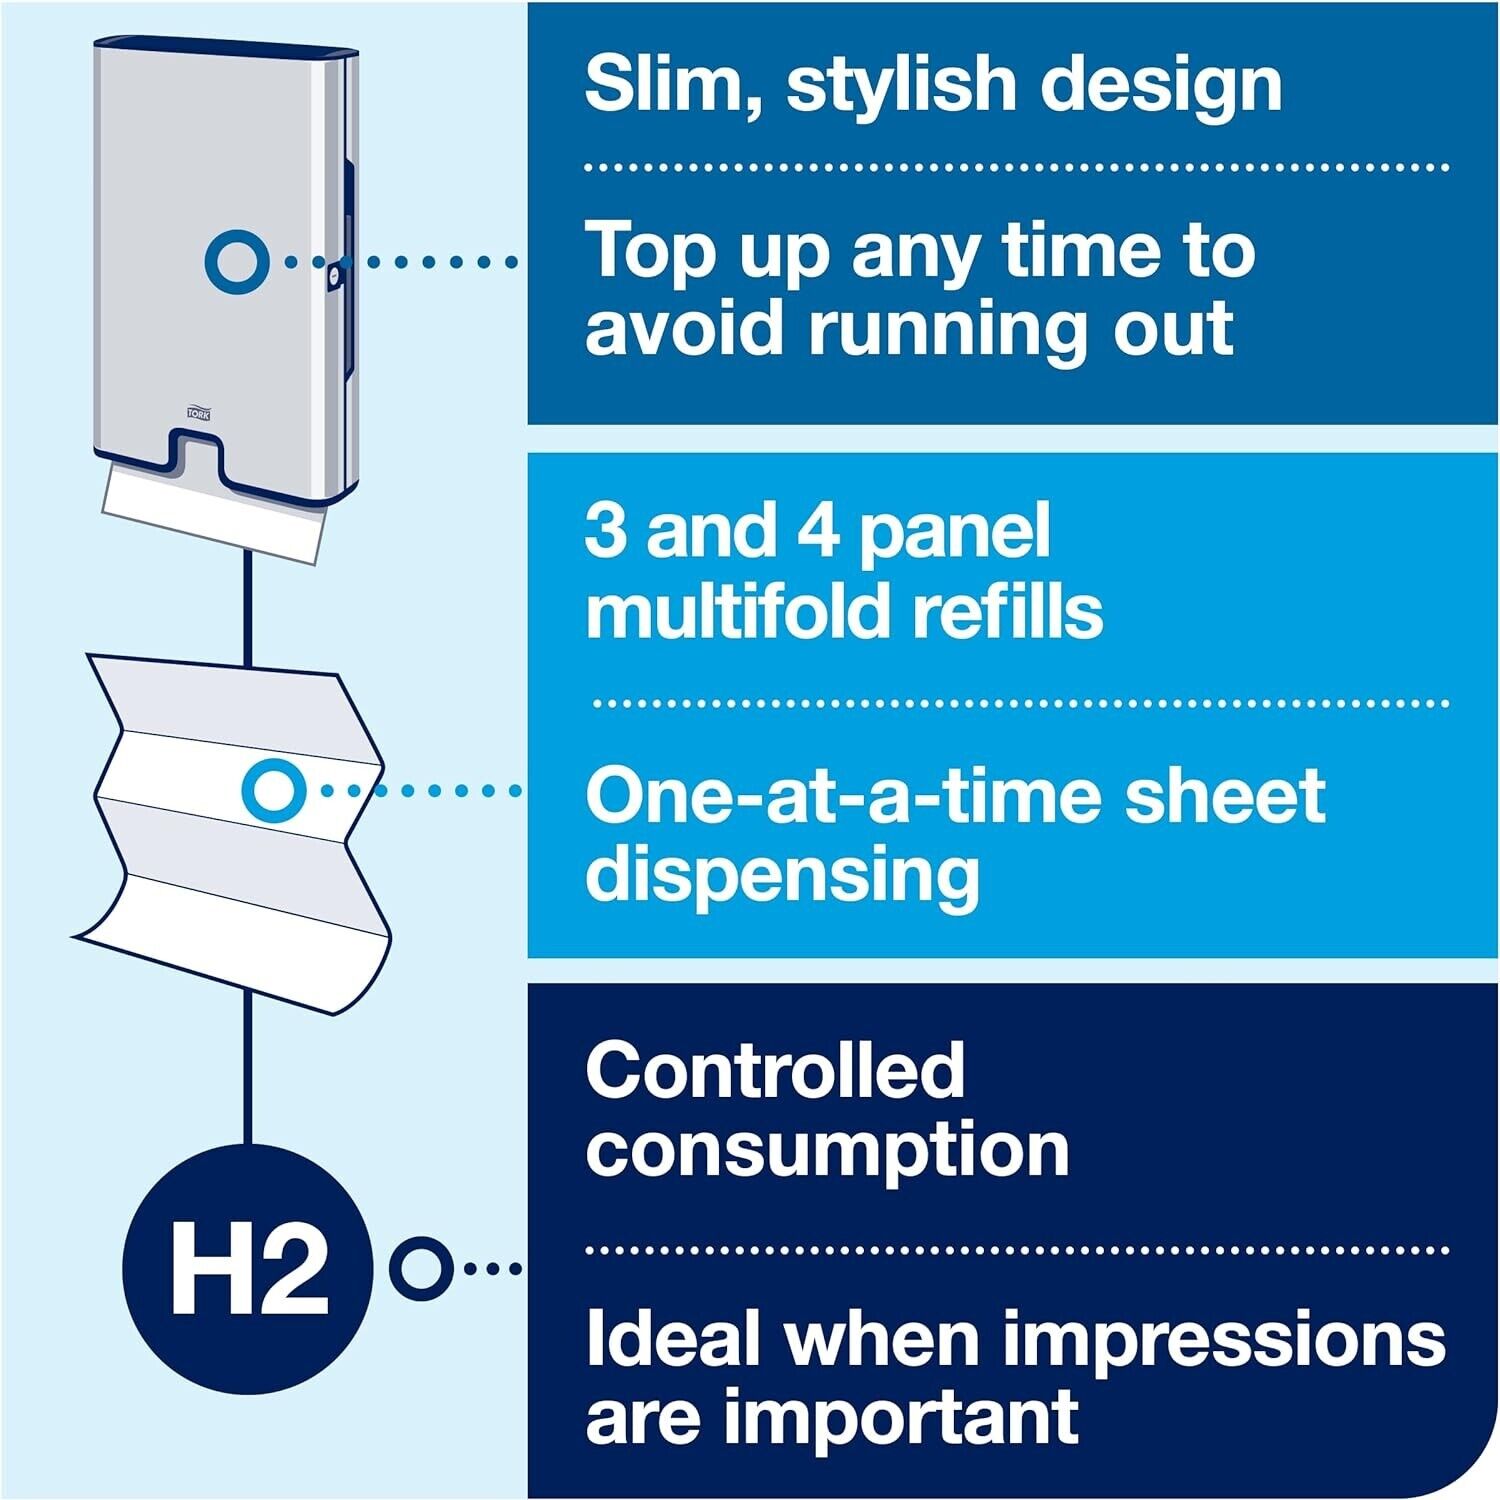 MULTI FOLD Paper Towel Dispenser, STAINLESS STEEL Tork Xpress H2 (463002)